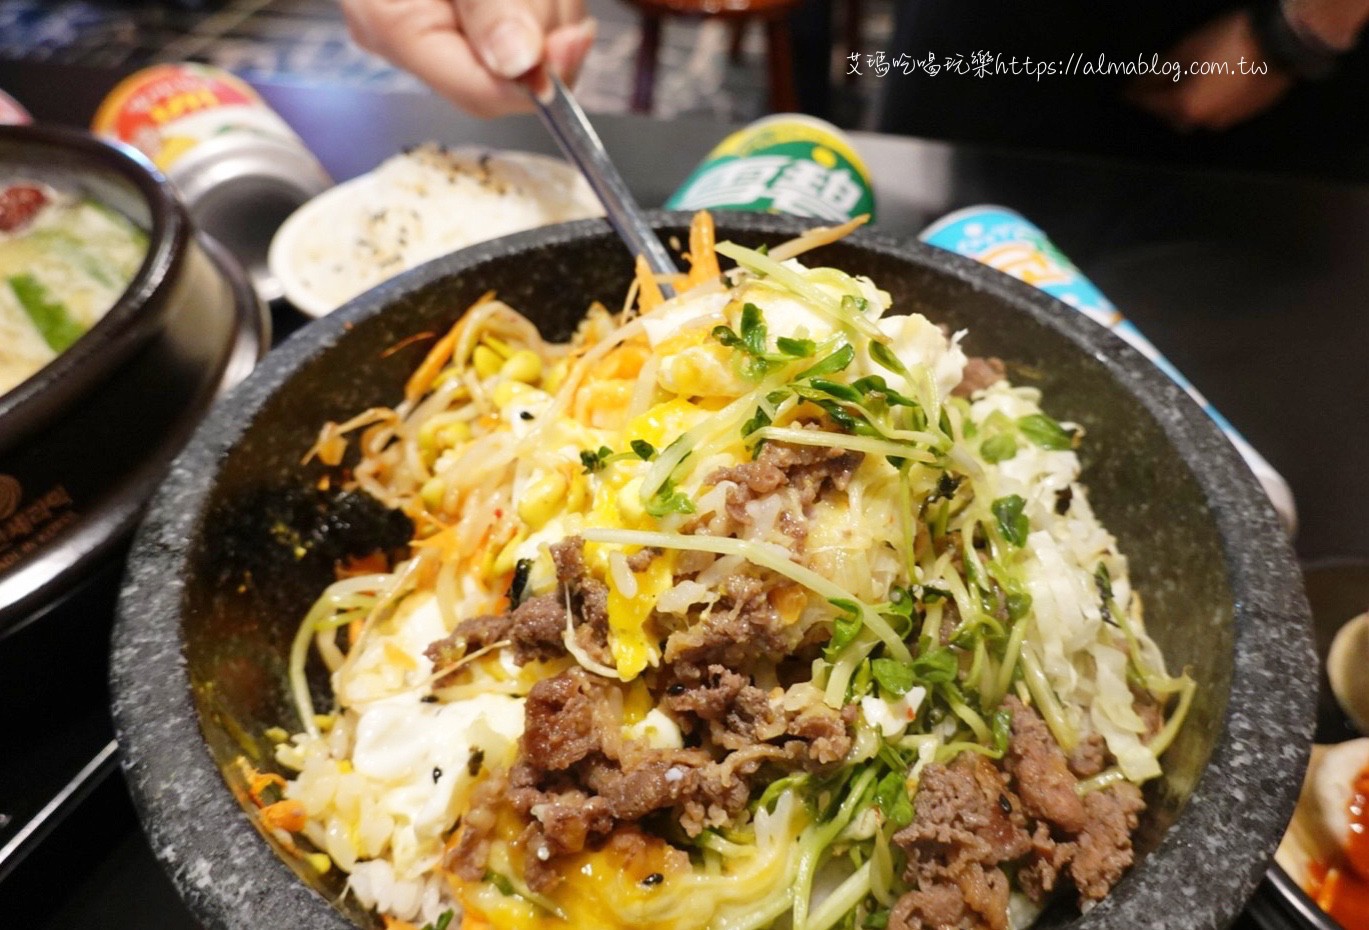 人蔘雞,捏捏飯糰,石鍋拌飯,韓式料理,韓式泡菜,韓歐尼